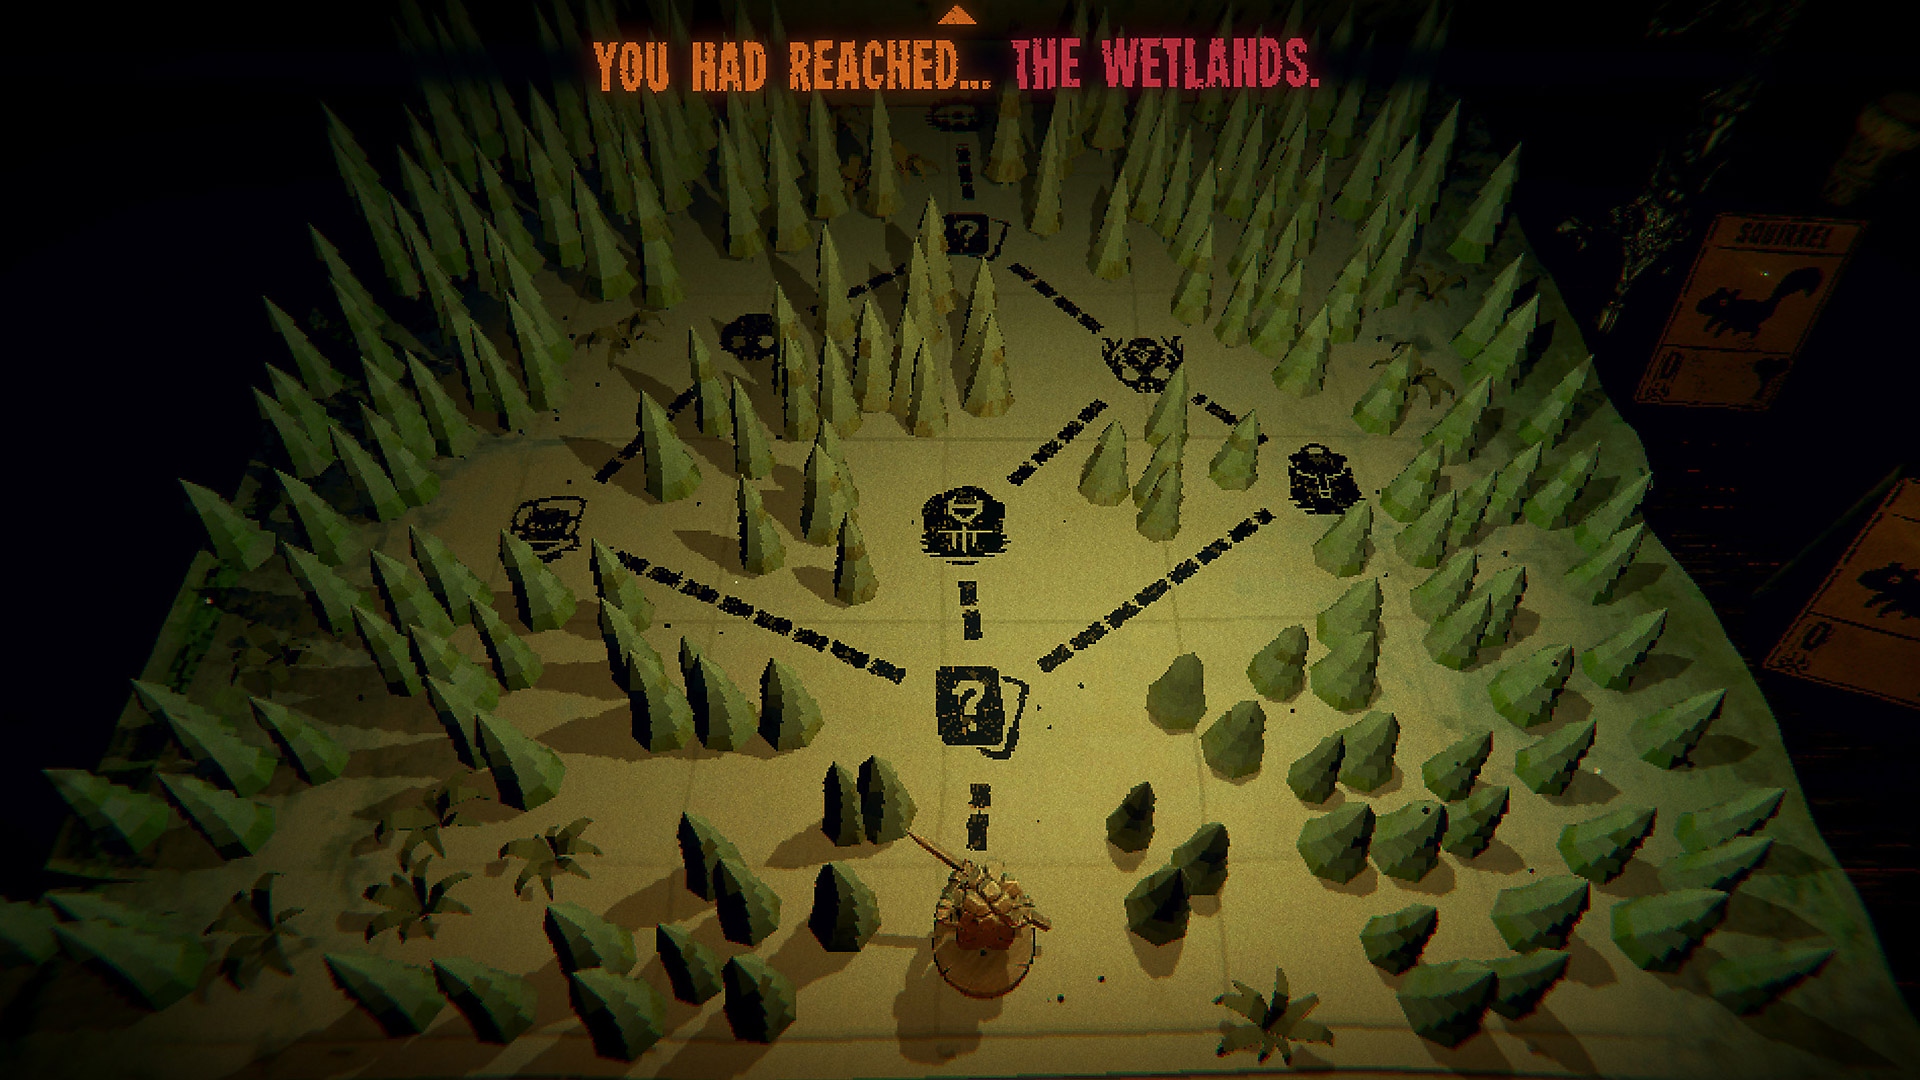 Captura de pantalla del juego Inscryption con un mapa de una zona boscosa con múltiples caminos entre los árboles.